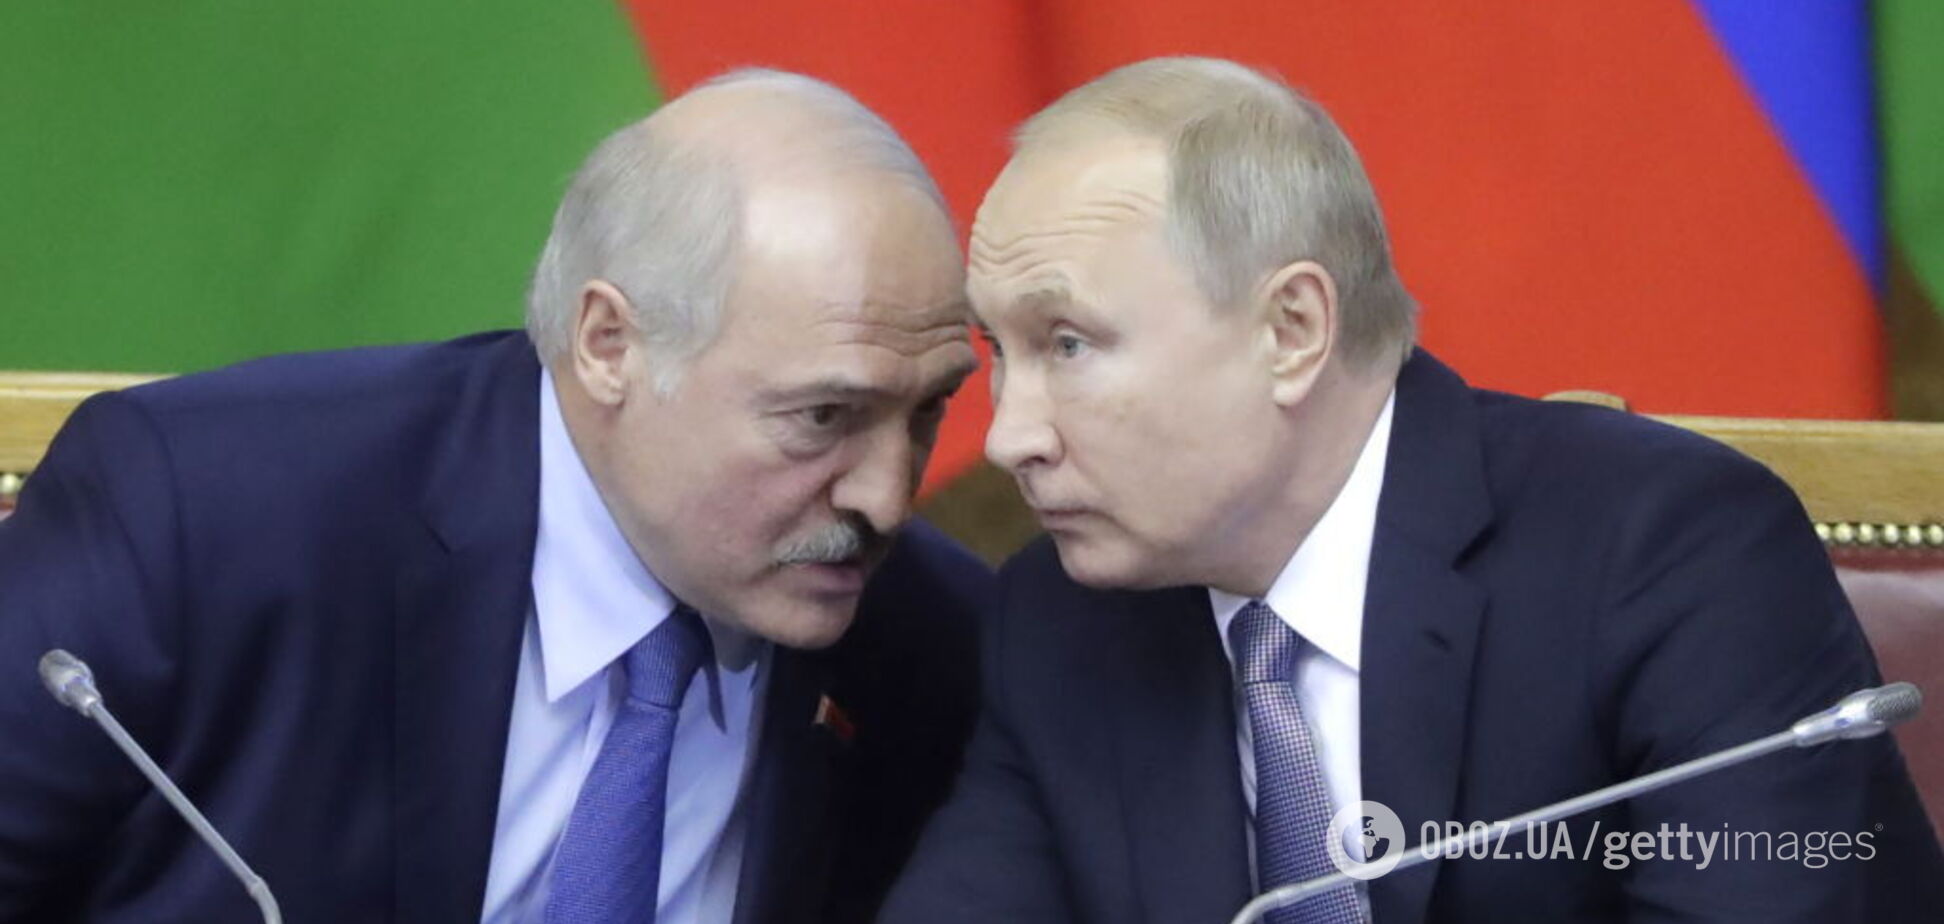 'Покажіть людину живу': Лукашенко на зустрічі з Путіним втрапив у конфуз